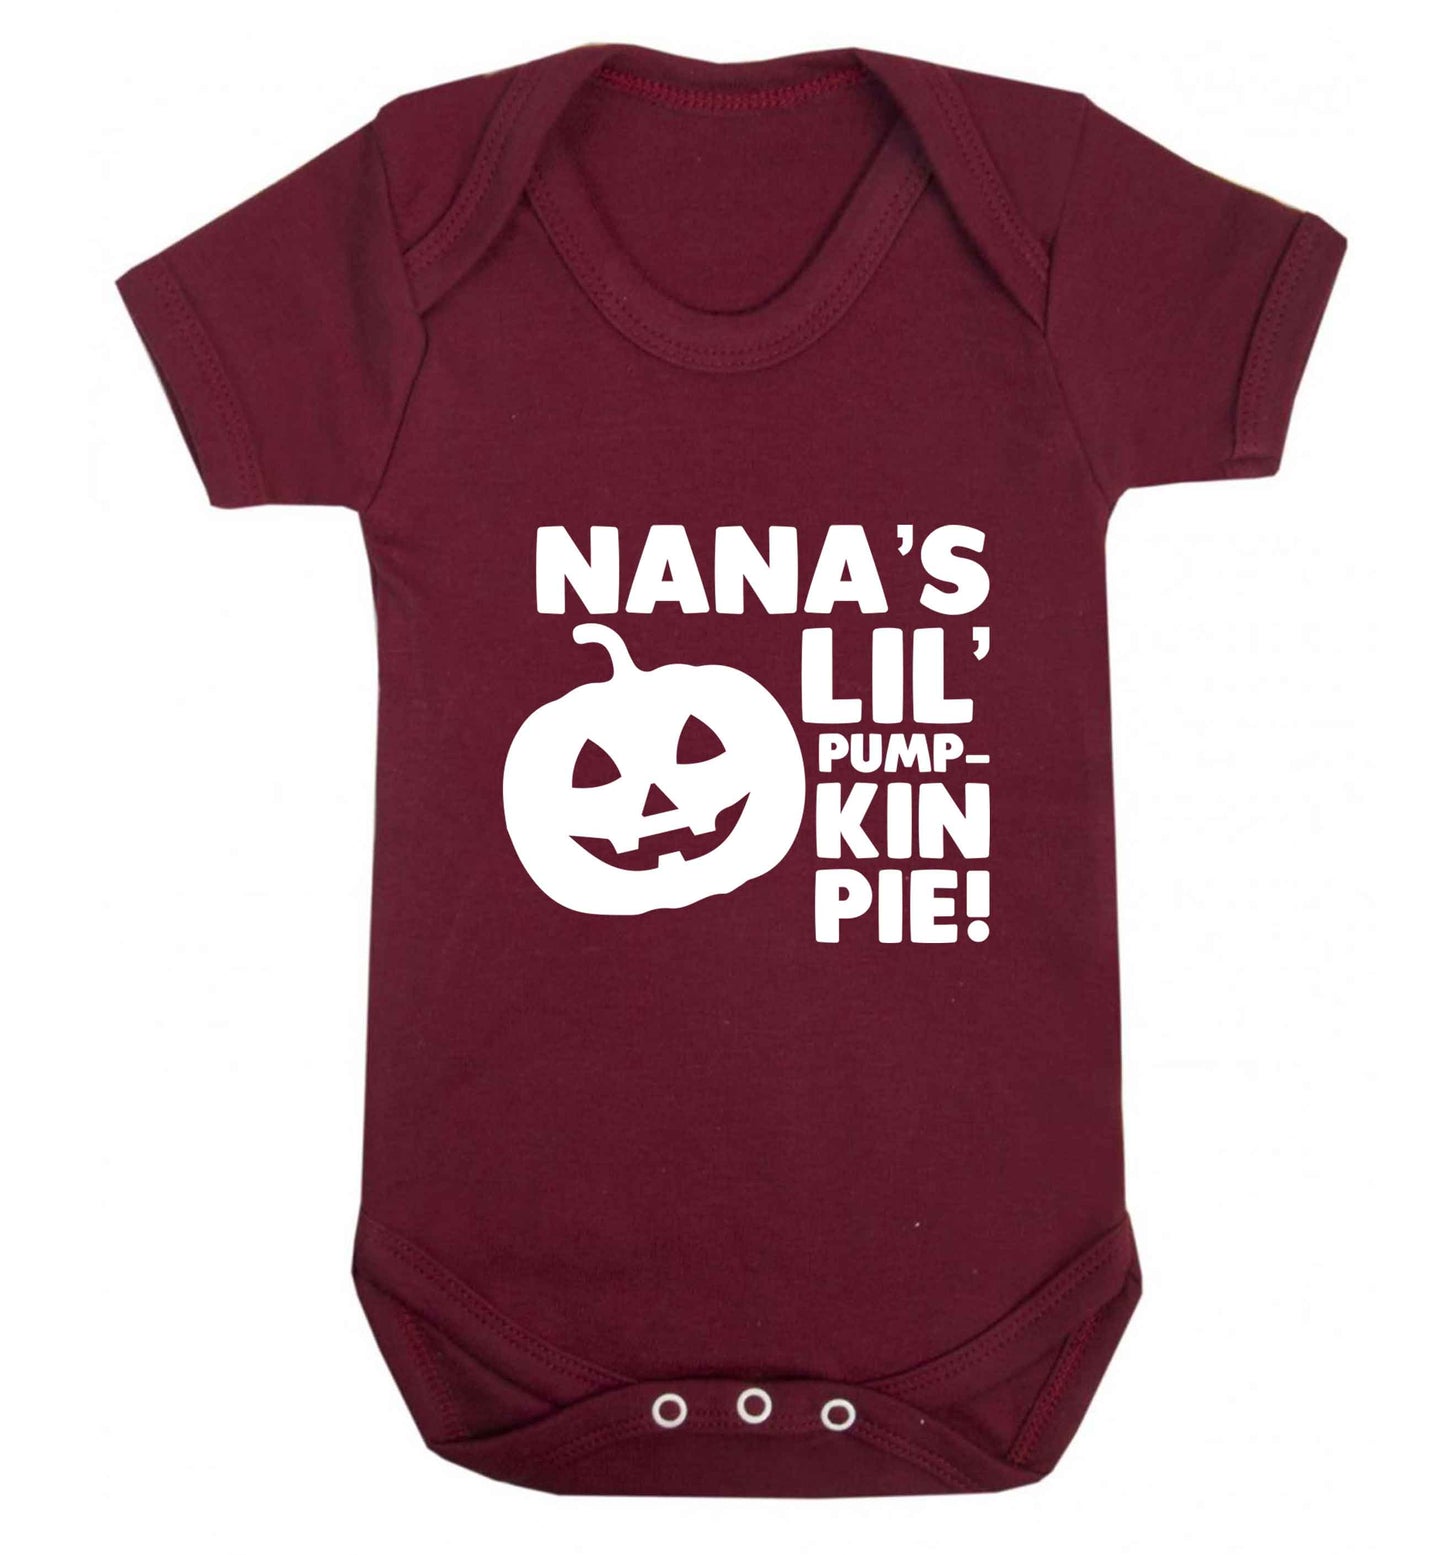 Nana's lil' pumpkin pie baby vest maroon 18-24 months